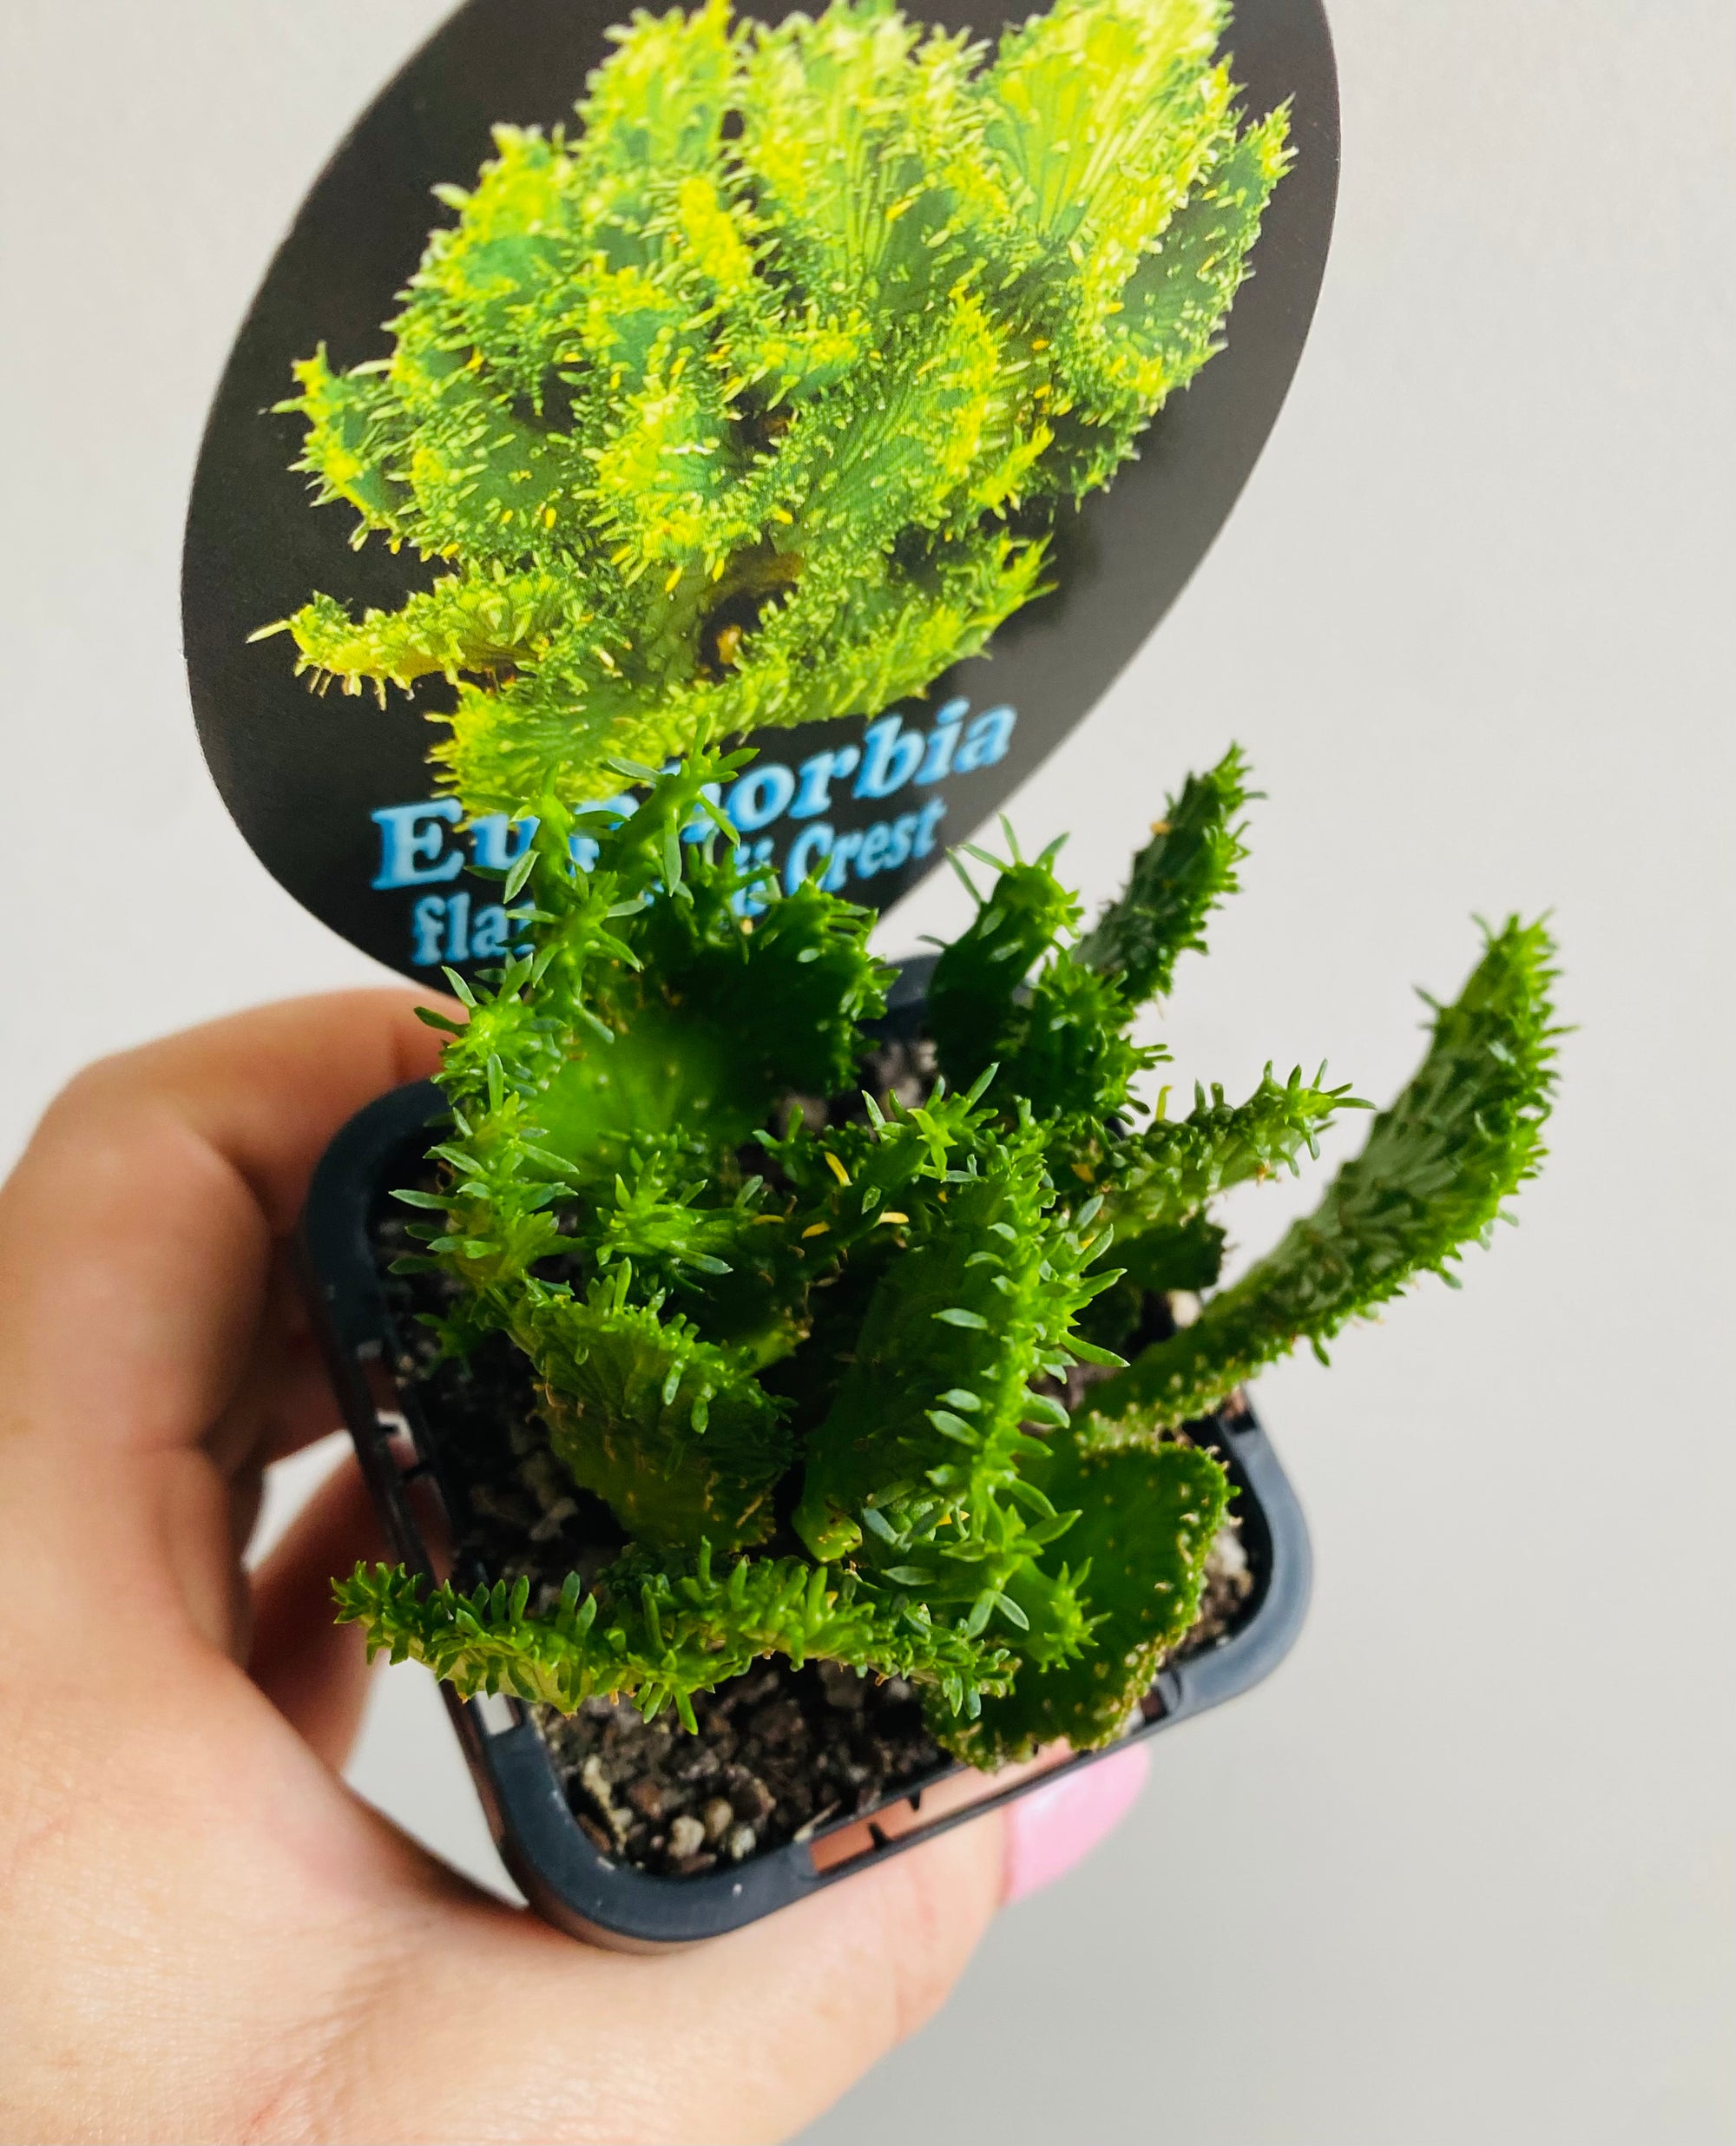 Euphorbia flanaganii Crest